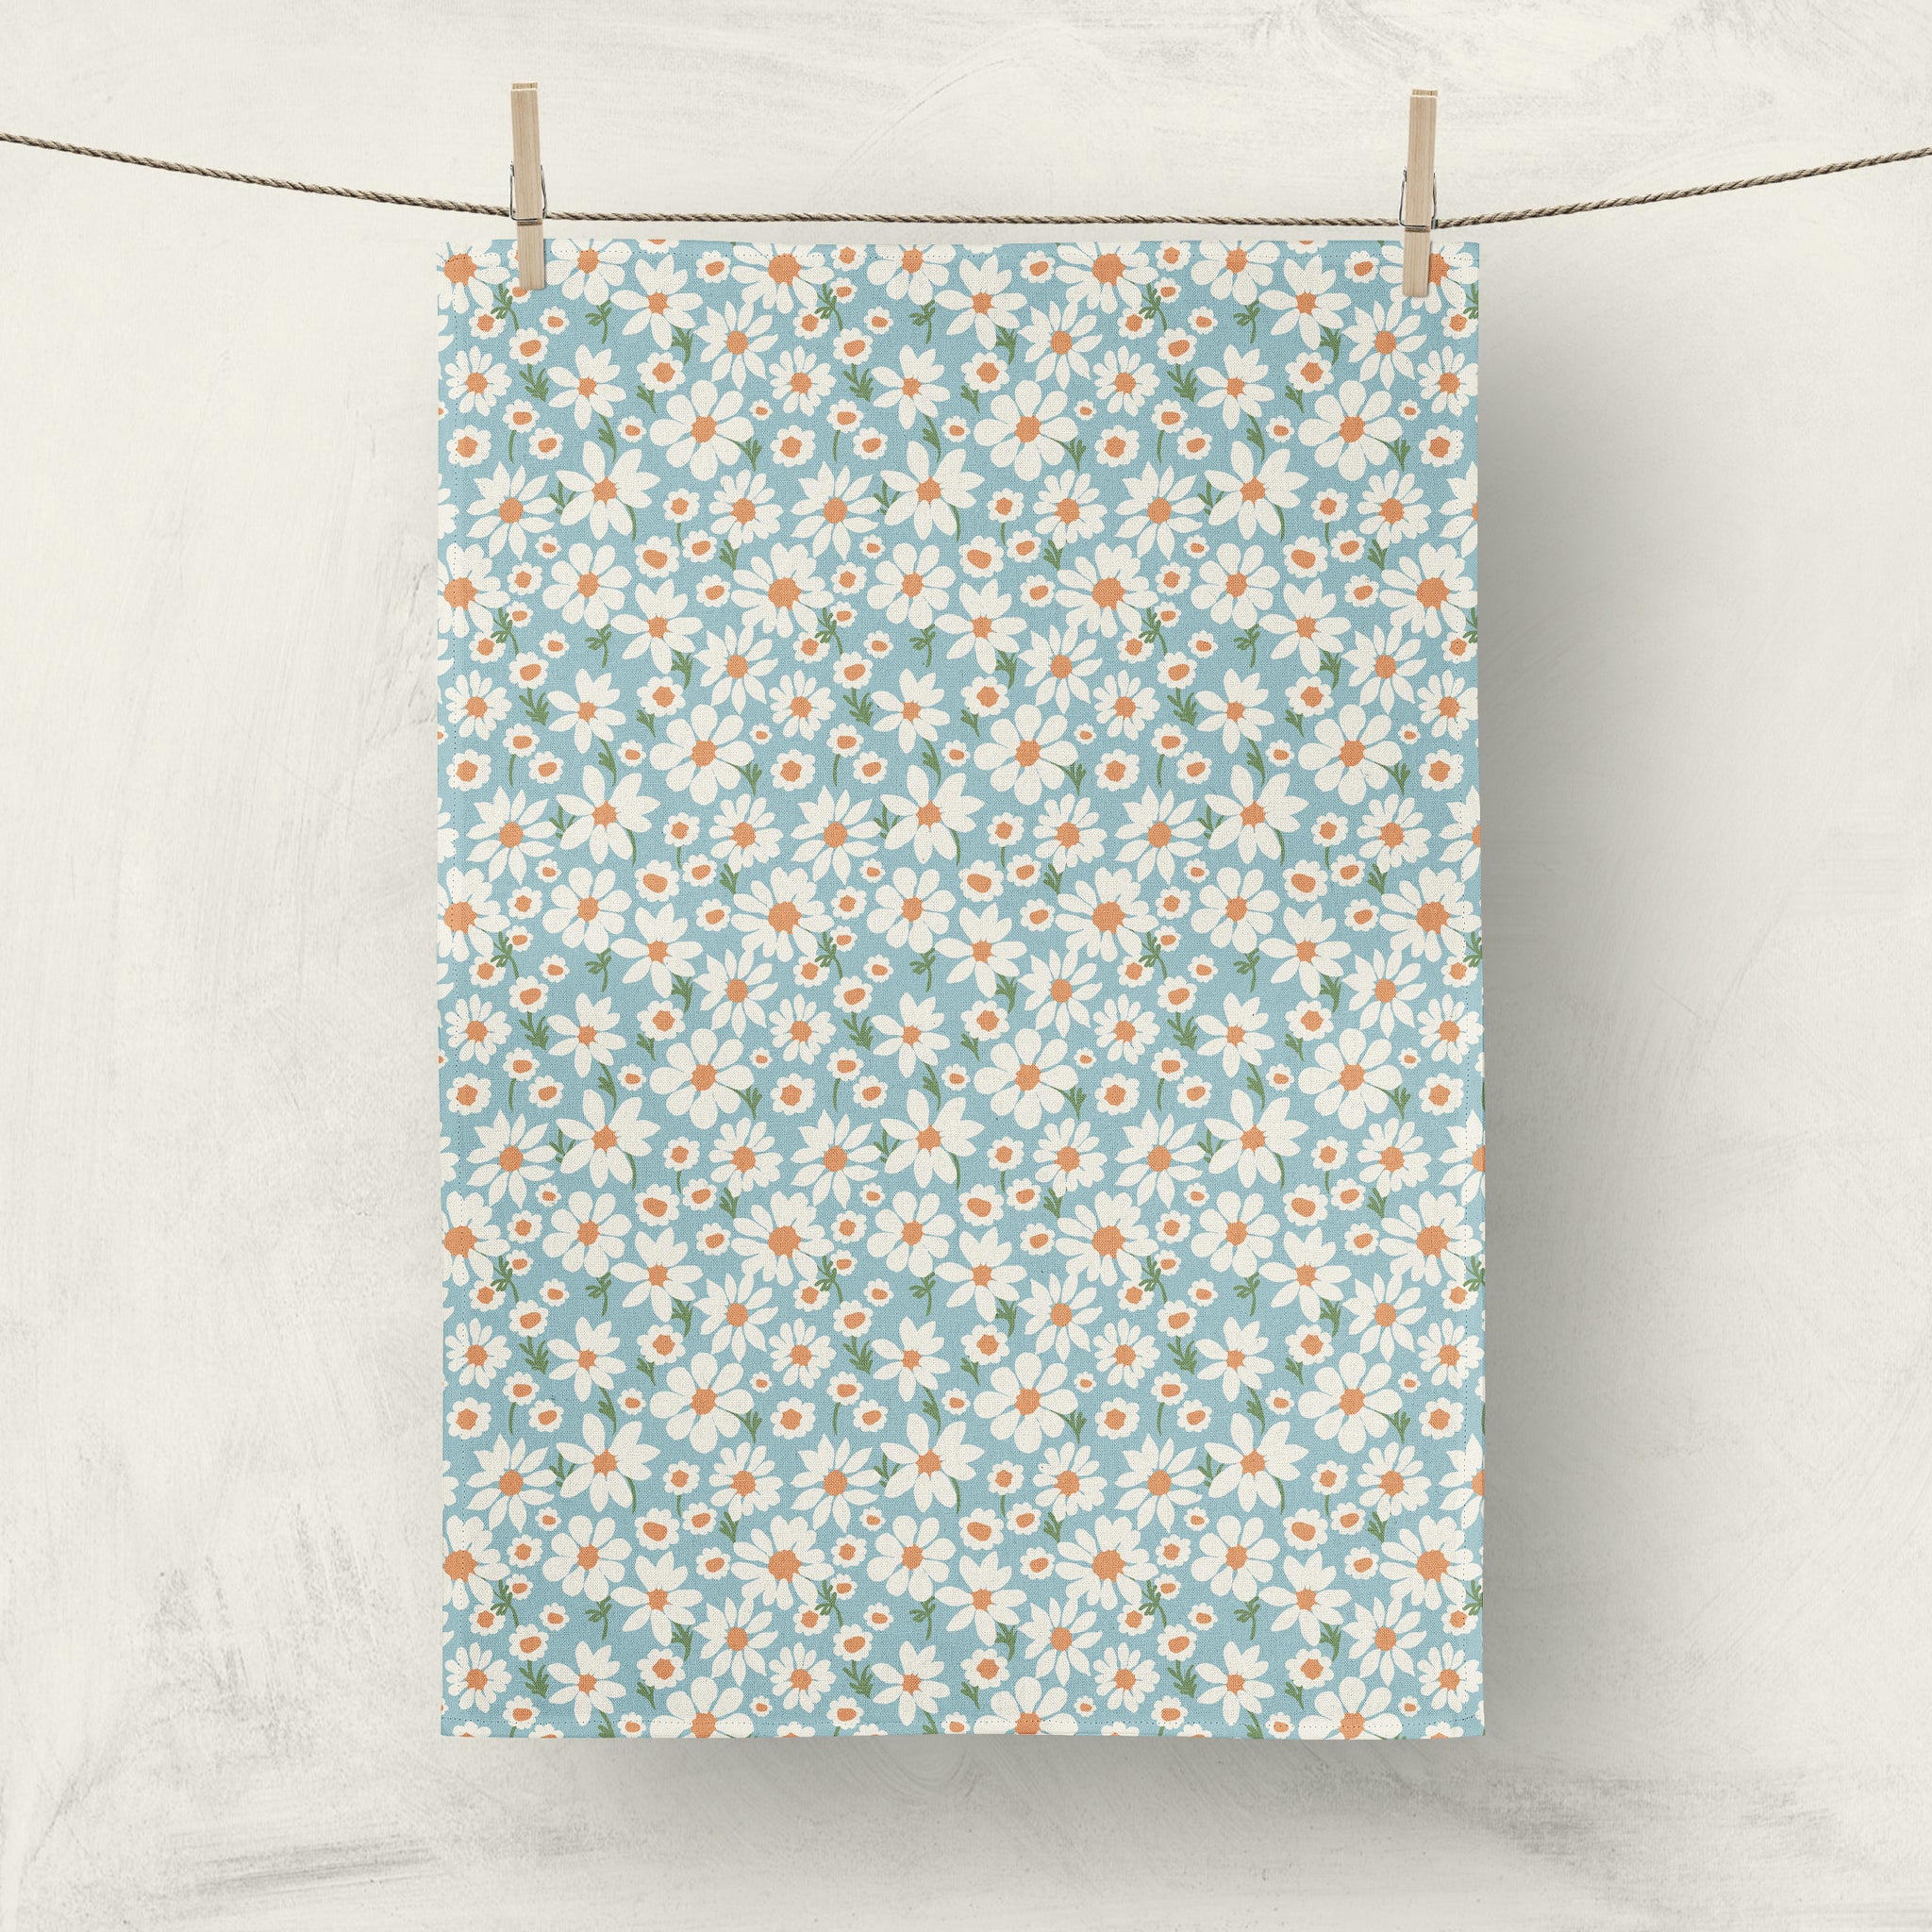 Blue daisy tea towel by Darya Karenski